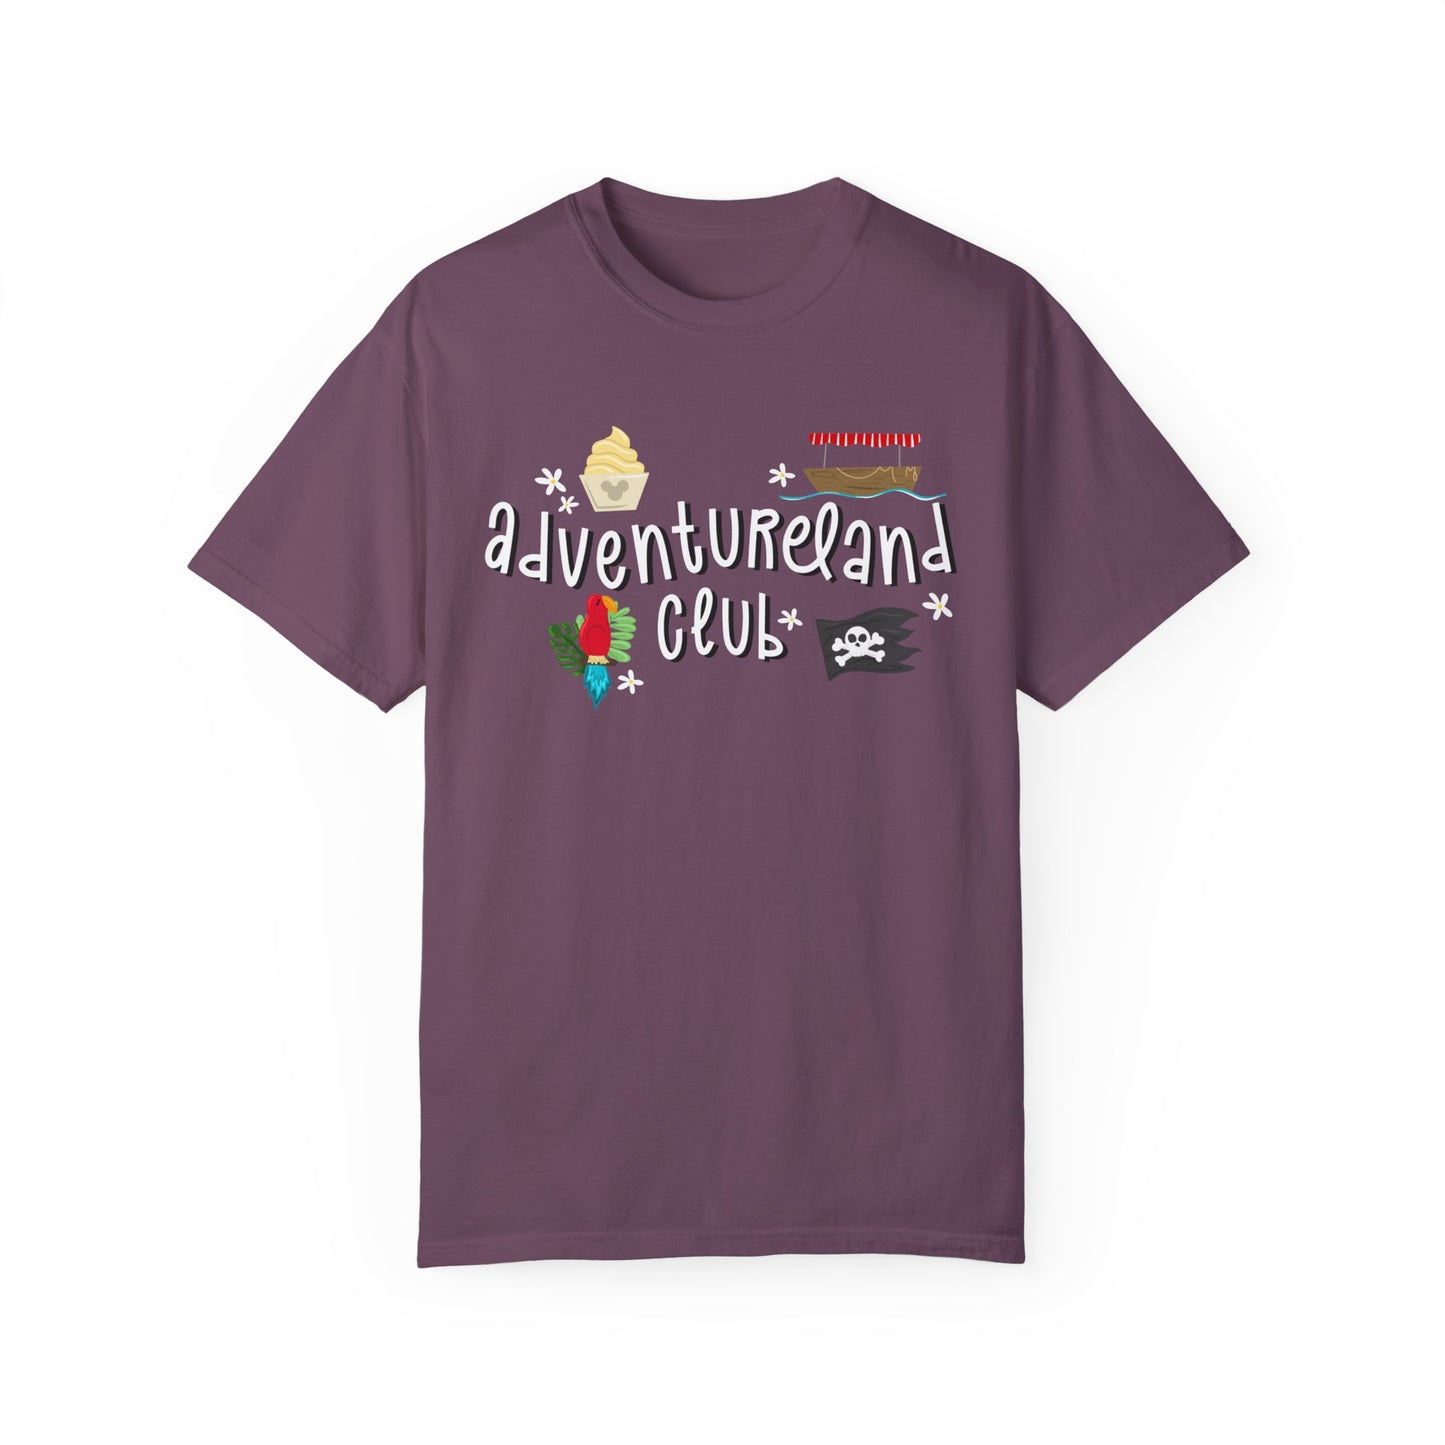 Adventureland Club - Comfort Colors